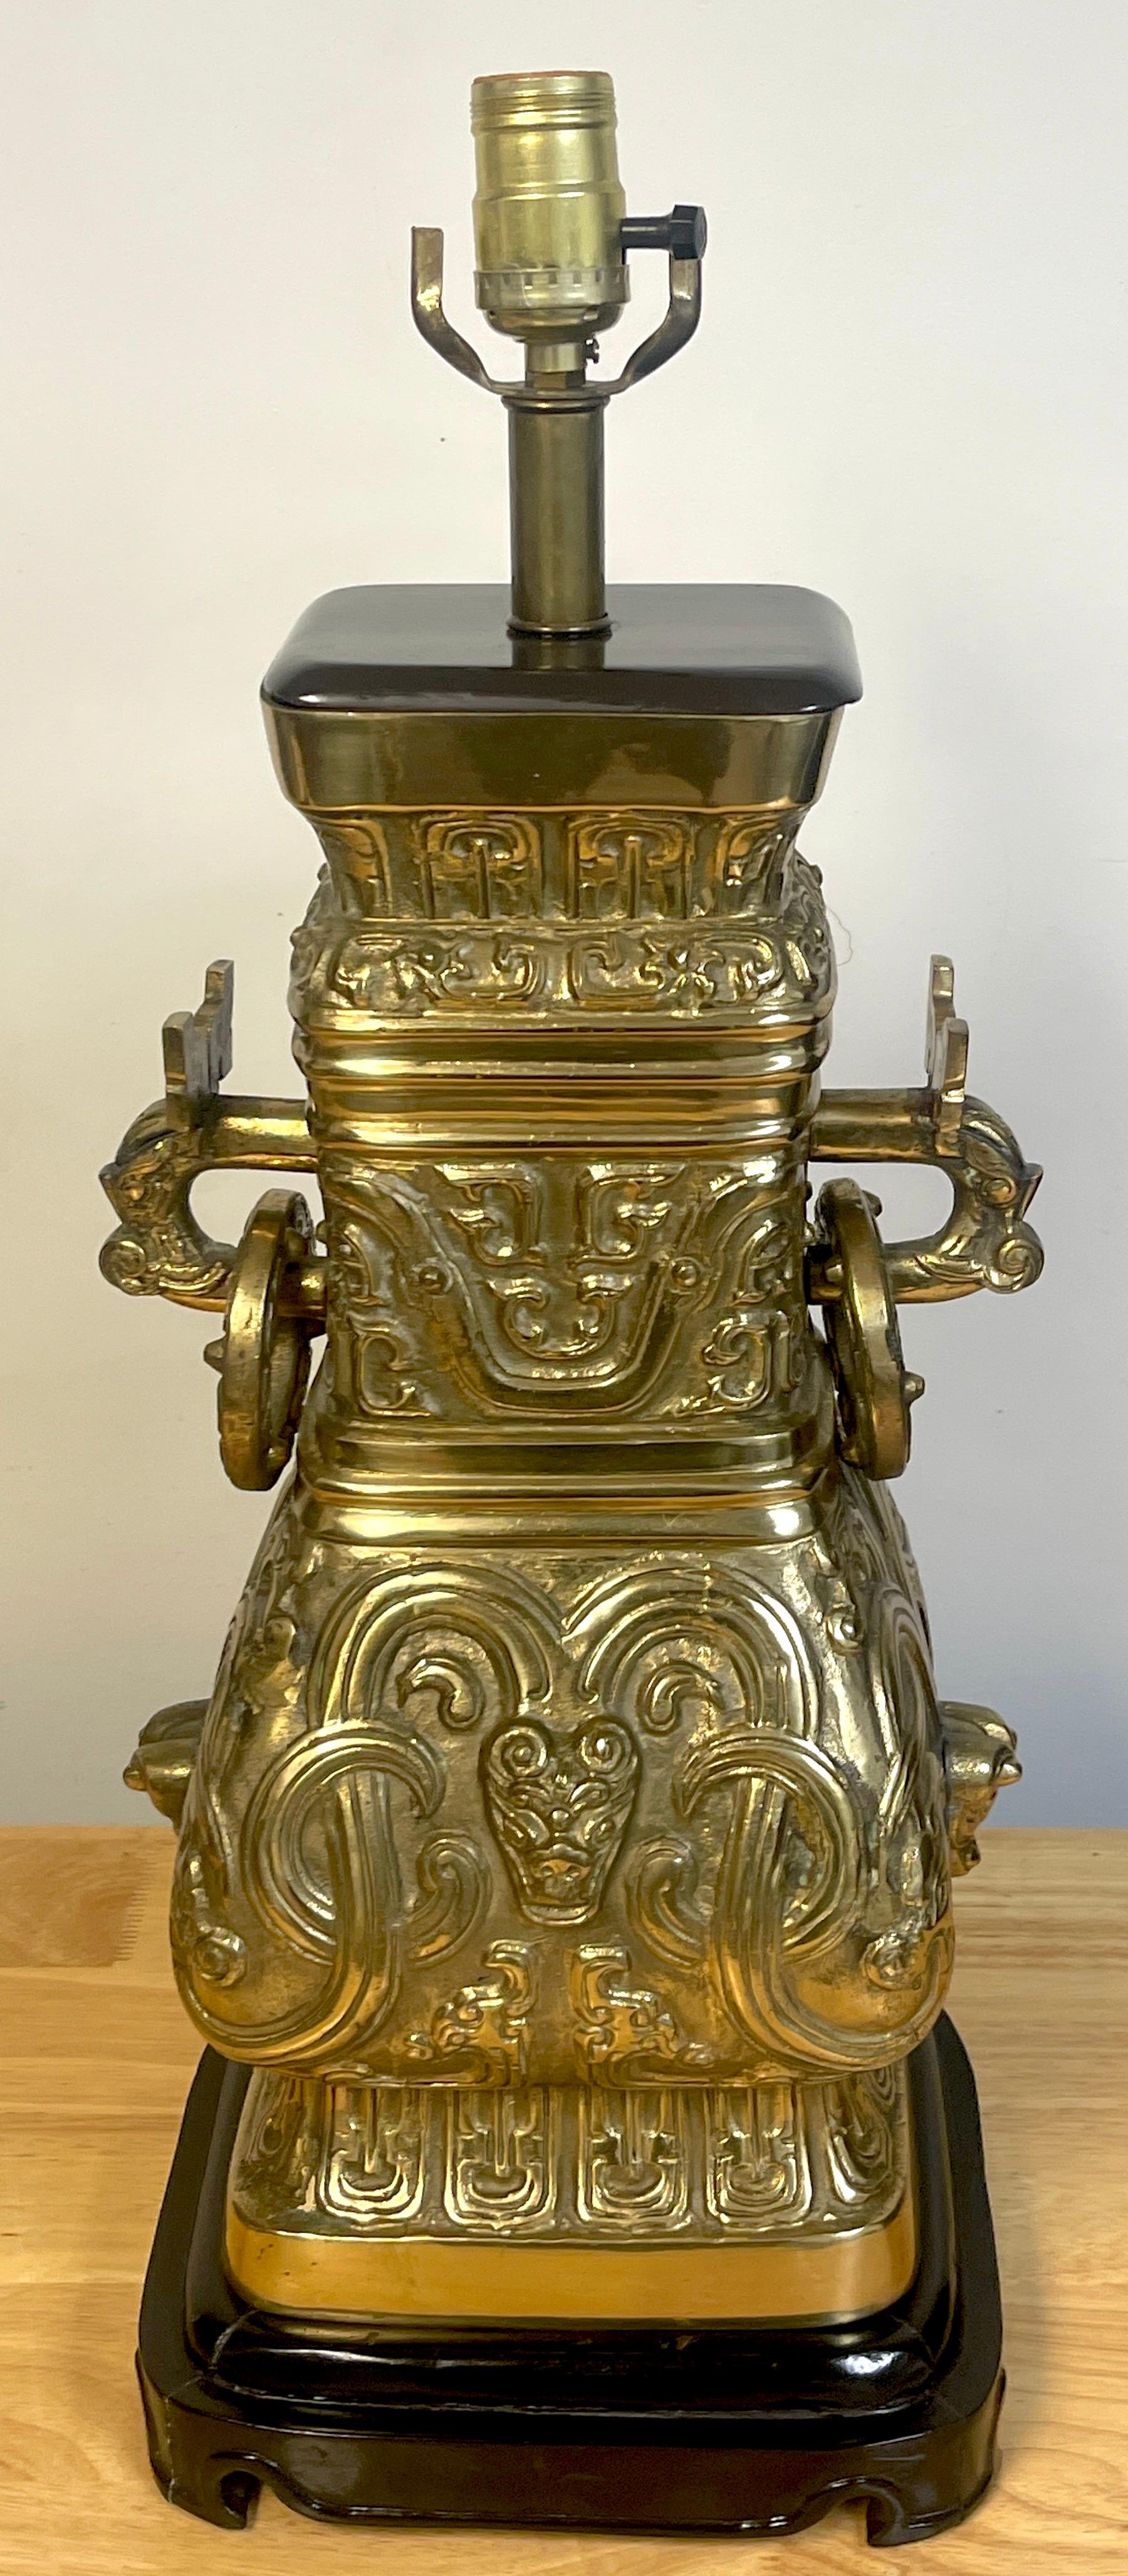 Vase à vin chinois (Hu) en laiton de style James Mont, servant maintenant de lampe, de bonne taille et de bon poids, belle fonte, avec des montures en bois personnalisées. Mesures : 19